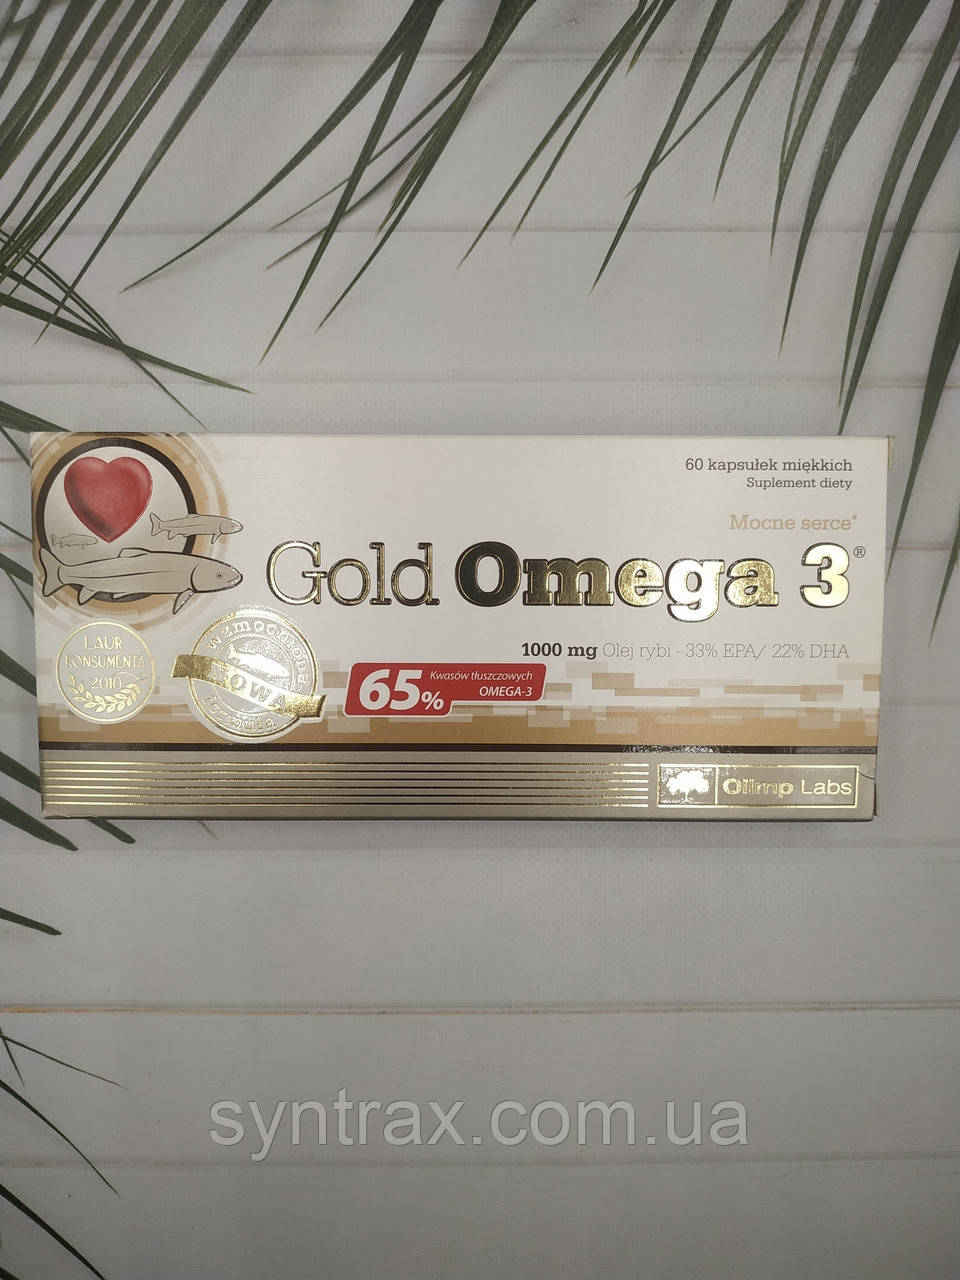 Gold Omega 3 дата до 02/23 65% EPA & DHA Olimp Labs 60 caps. омега 3 риб'ячий жир